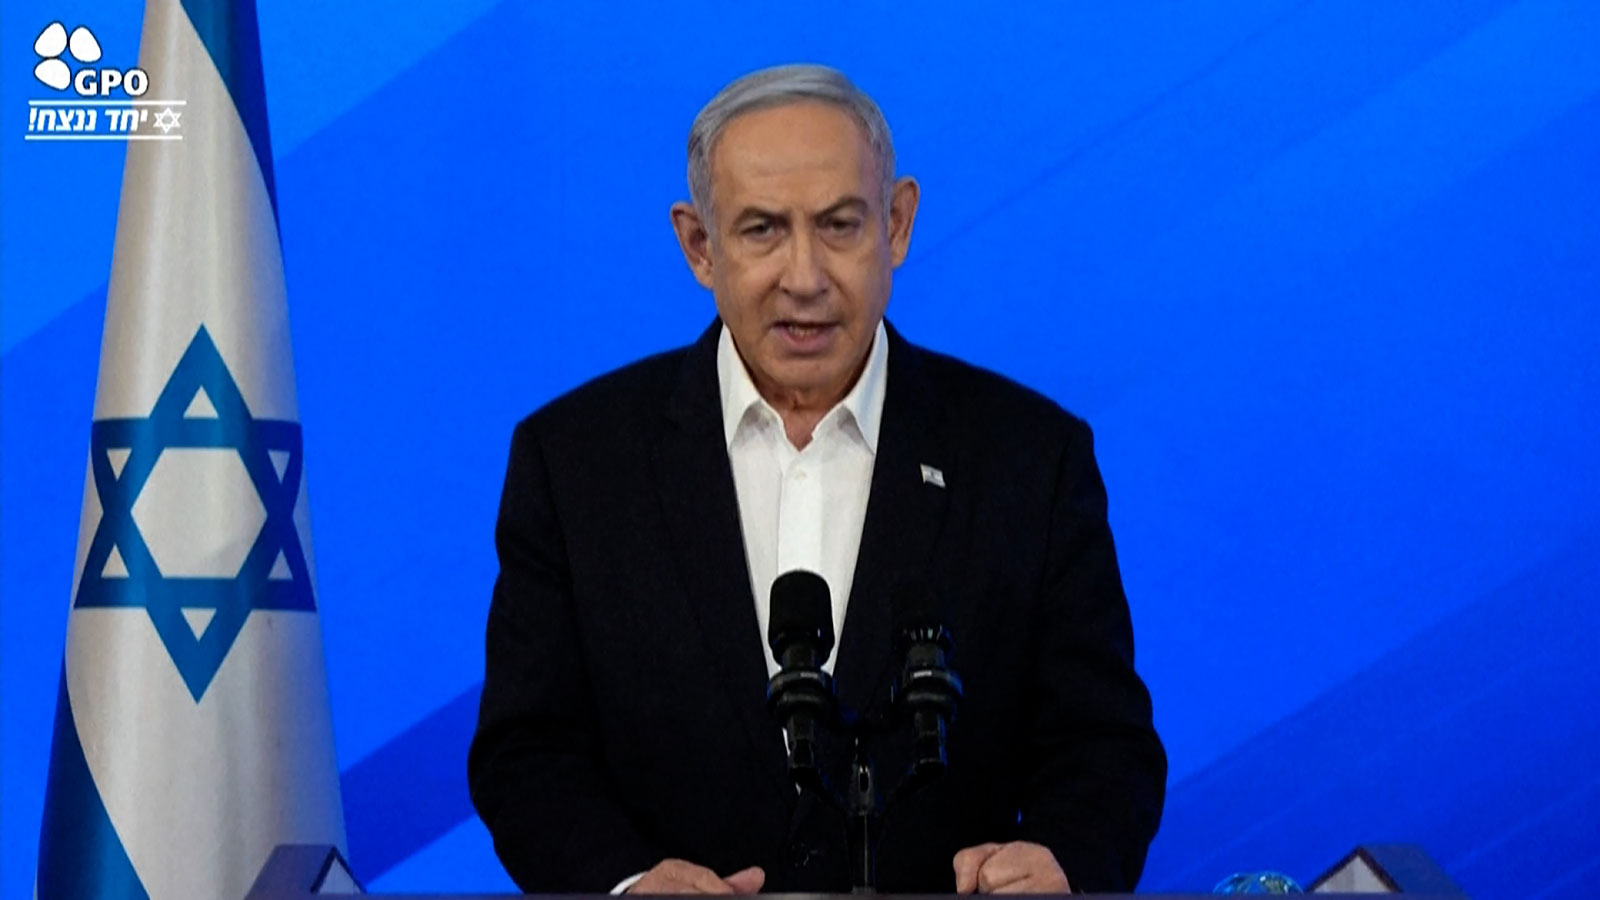 Netanyahu speaks in Tel Aviv on Thursday, January 18.